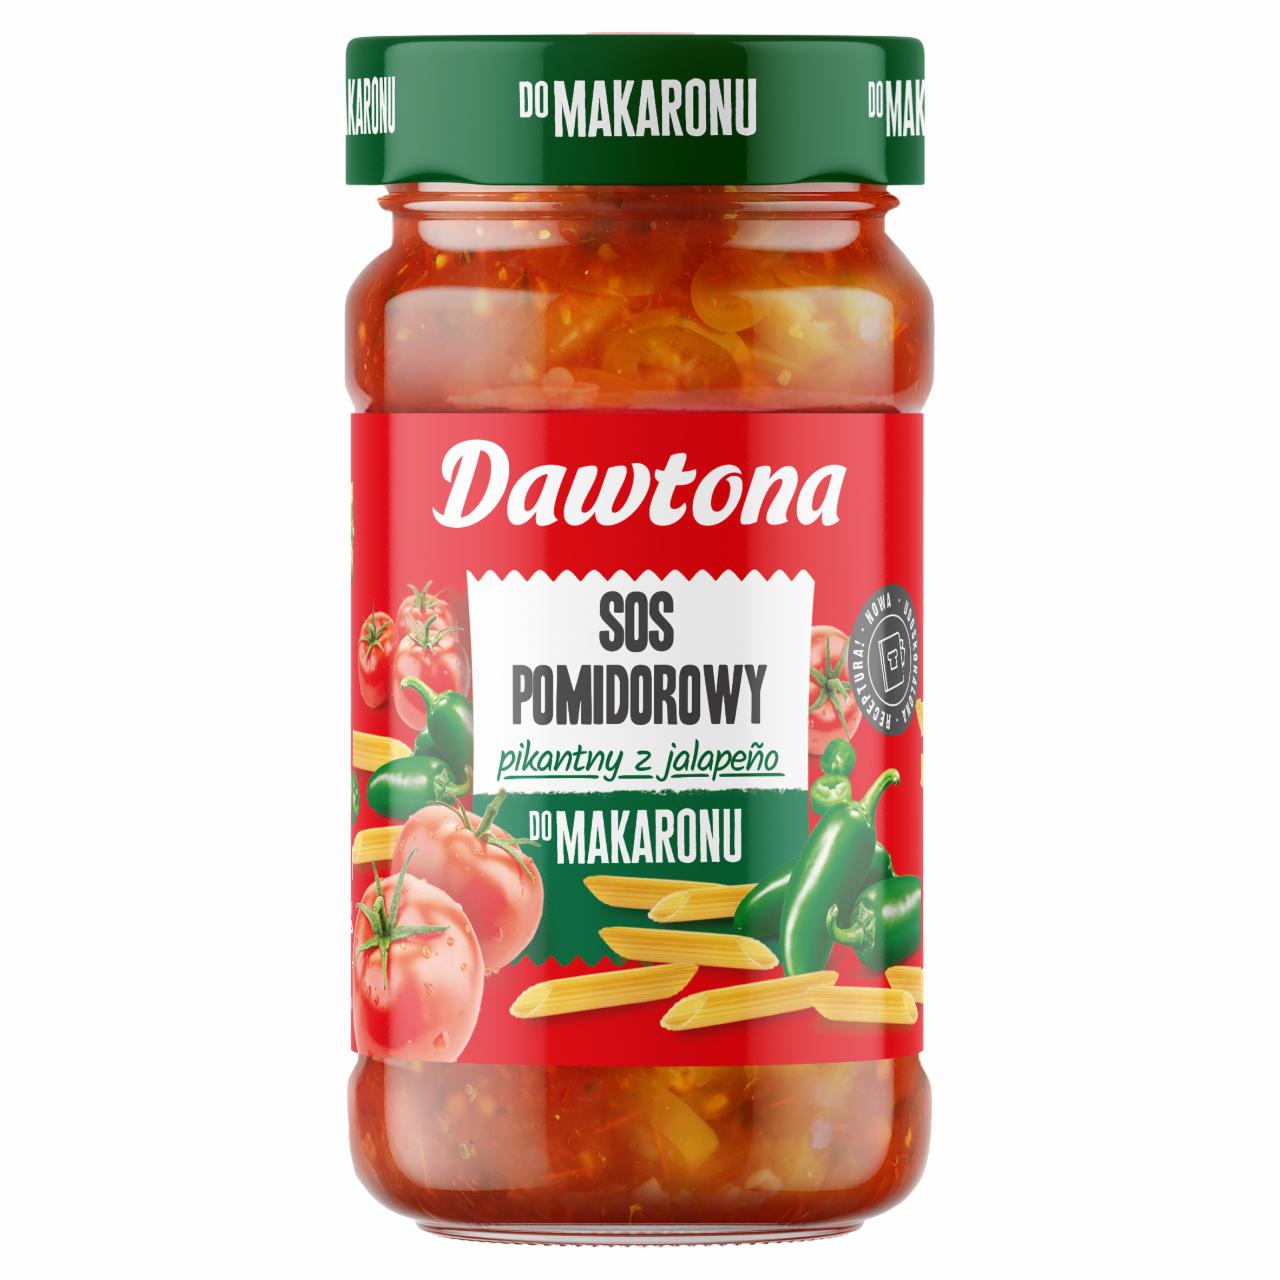 Zdjęcia - Dawtona Sos pomidorowy pikantny z jalapeño do makaronu 550 g